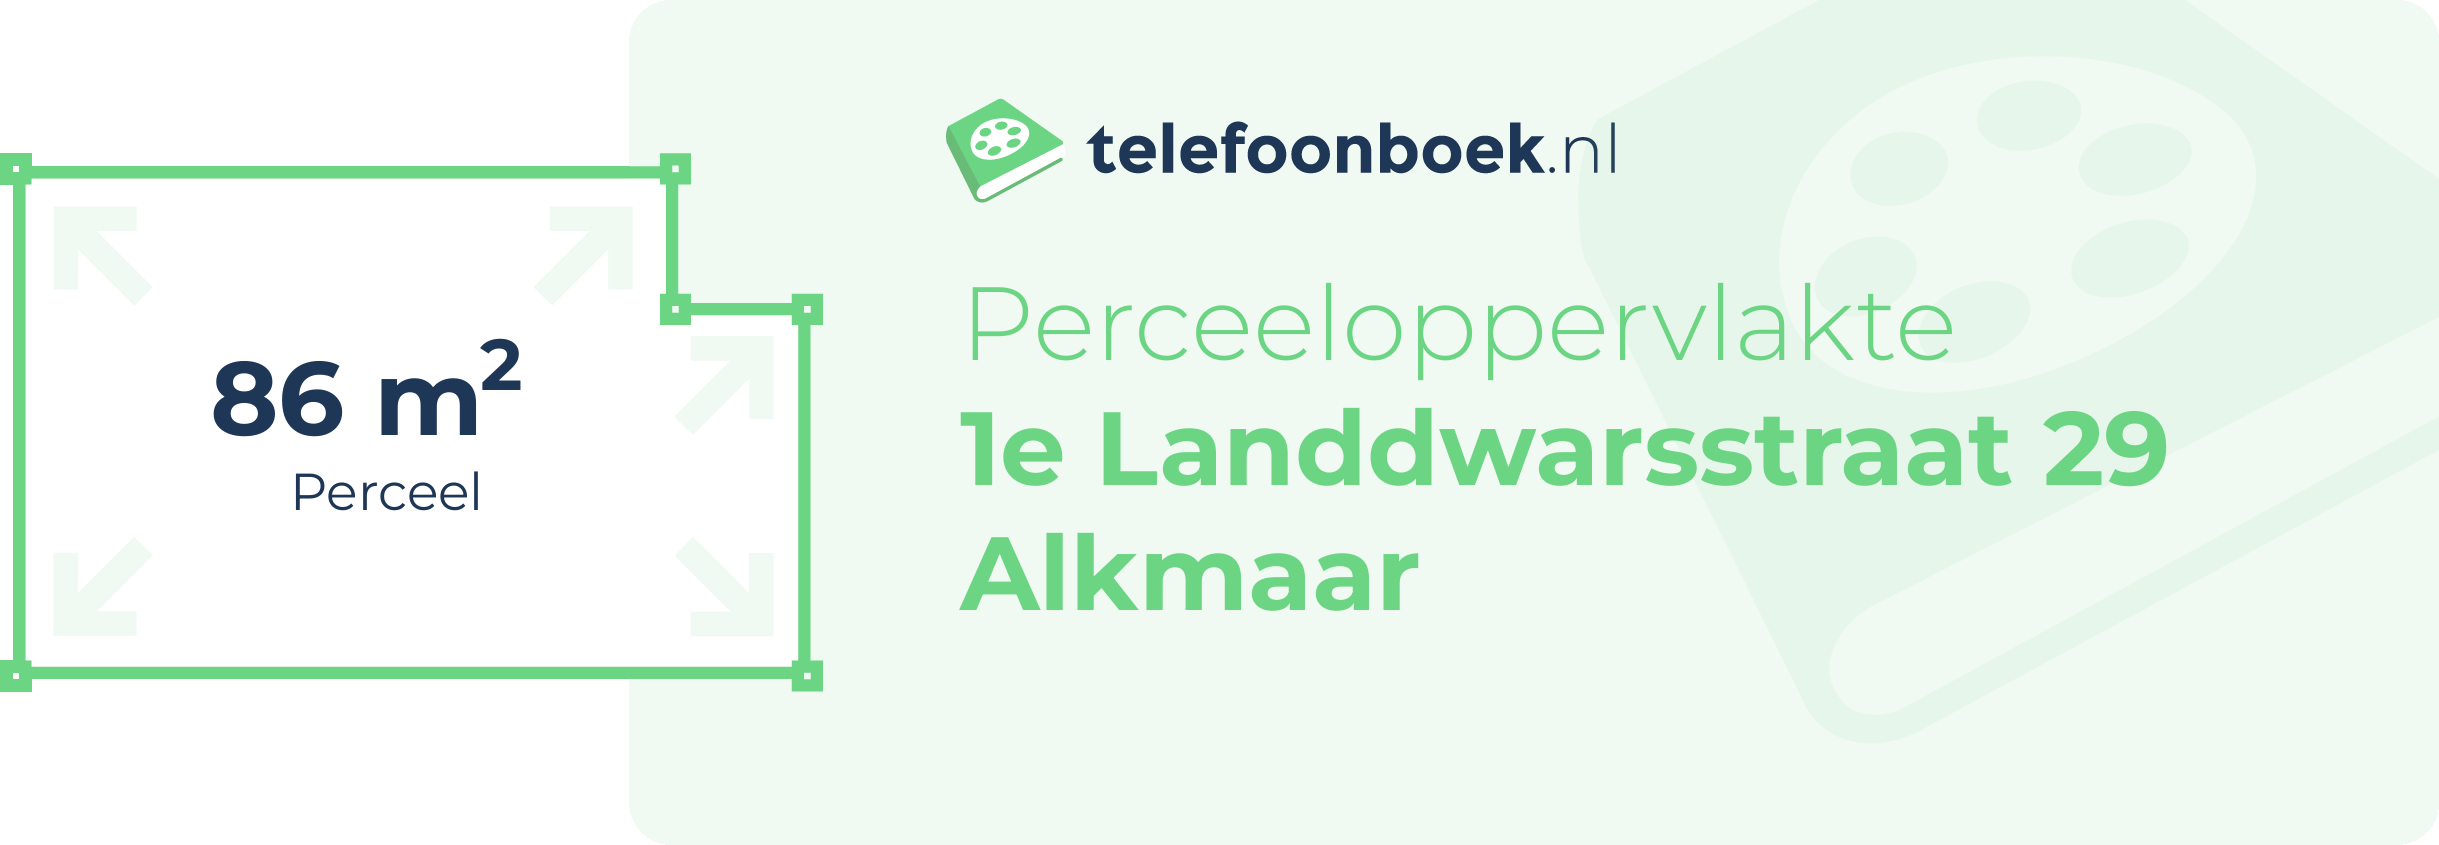 Perceeloppervlakte 1e Landdwarsstraat 29 Alkmaar